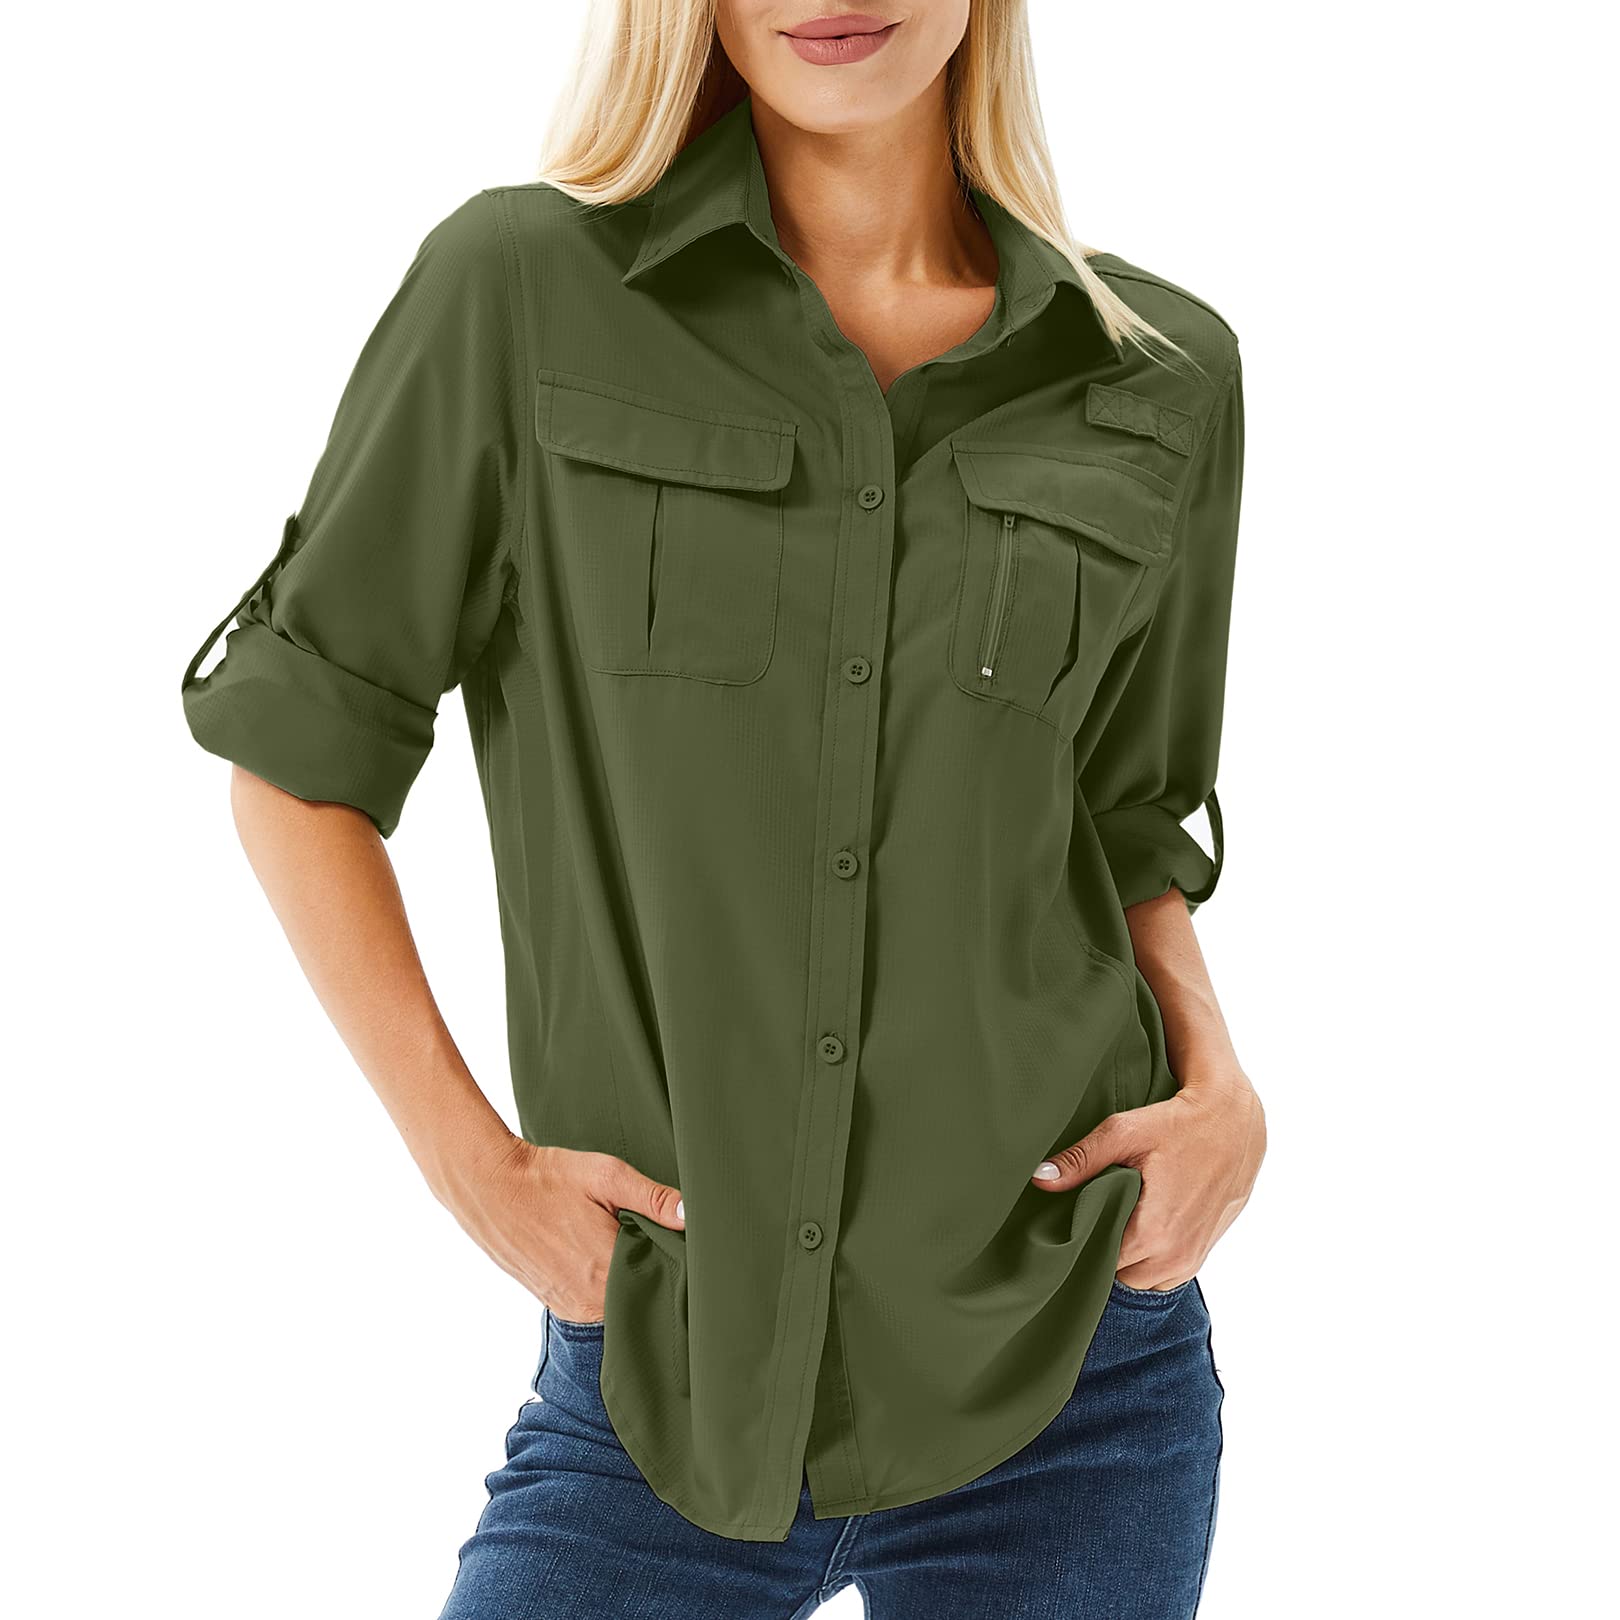 boutique en ligne yeyity Chemise pour femme UPF 50+ Protection UV T-shirt à manches longues pour femme Chemise de randonnée Safari Vêtements pour femme Respirant Séchage rapide Décontracté Tops Sport Tops NqpTkrNLB en ligne